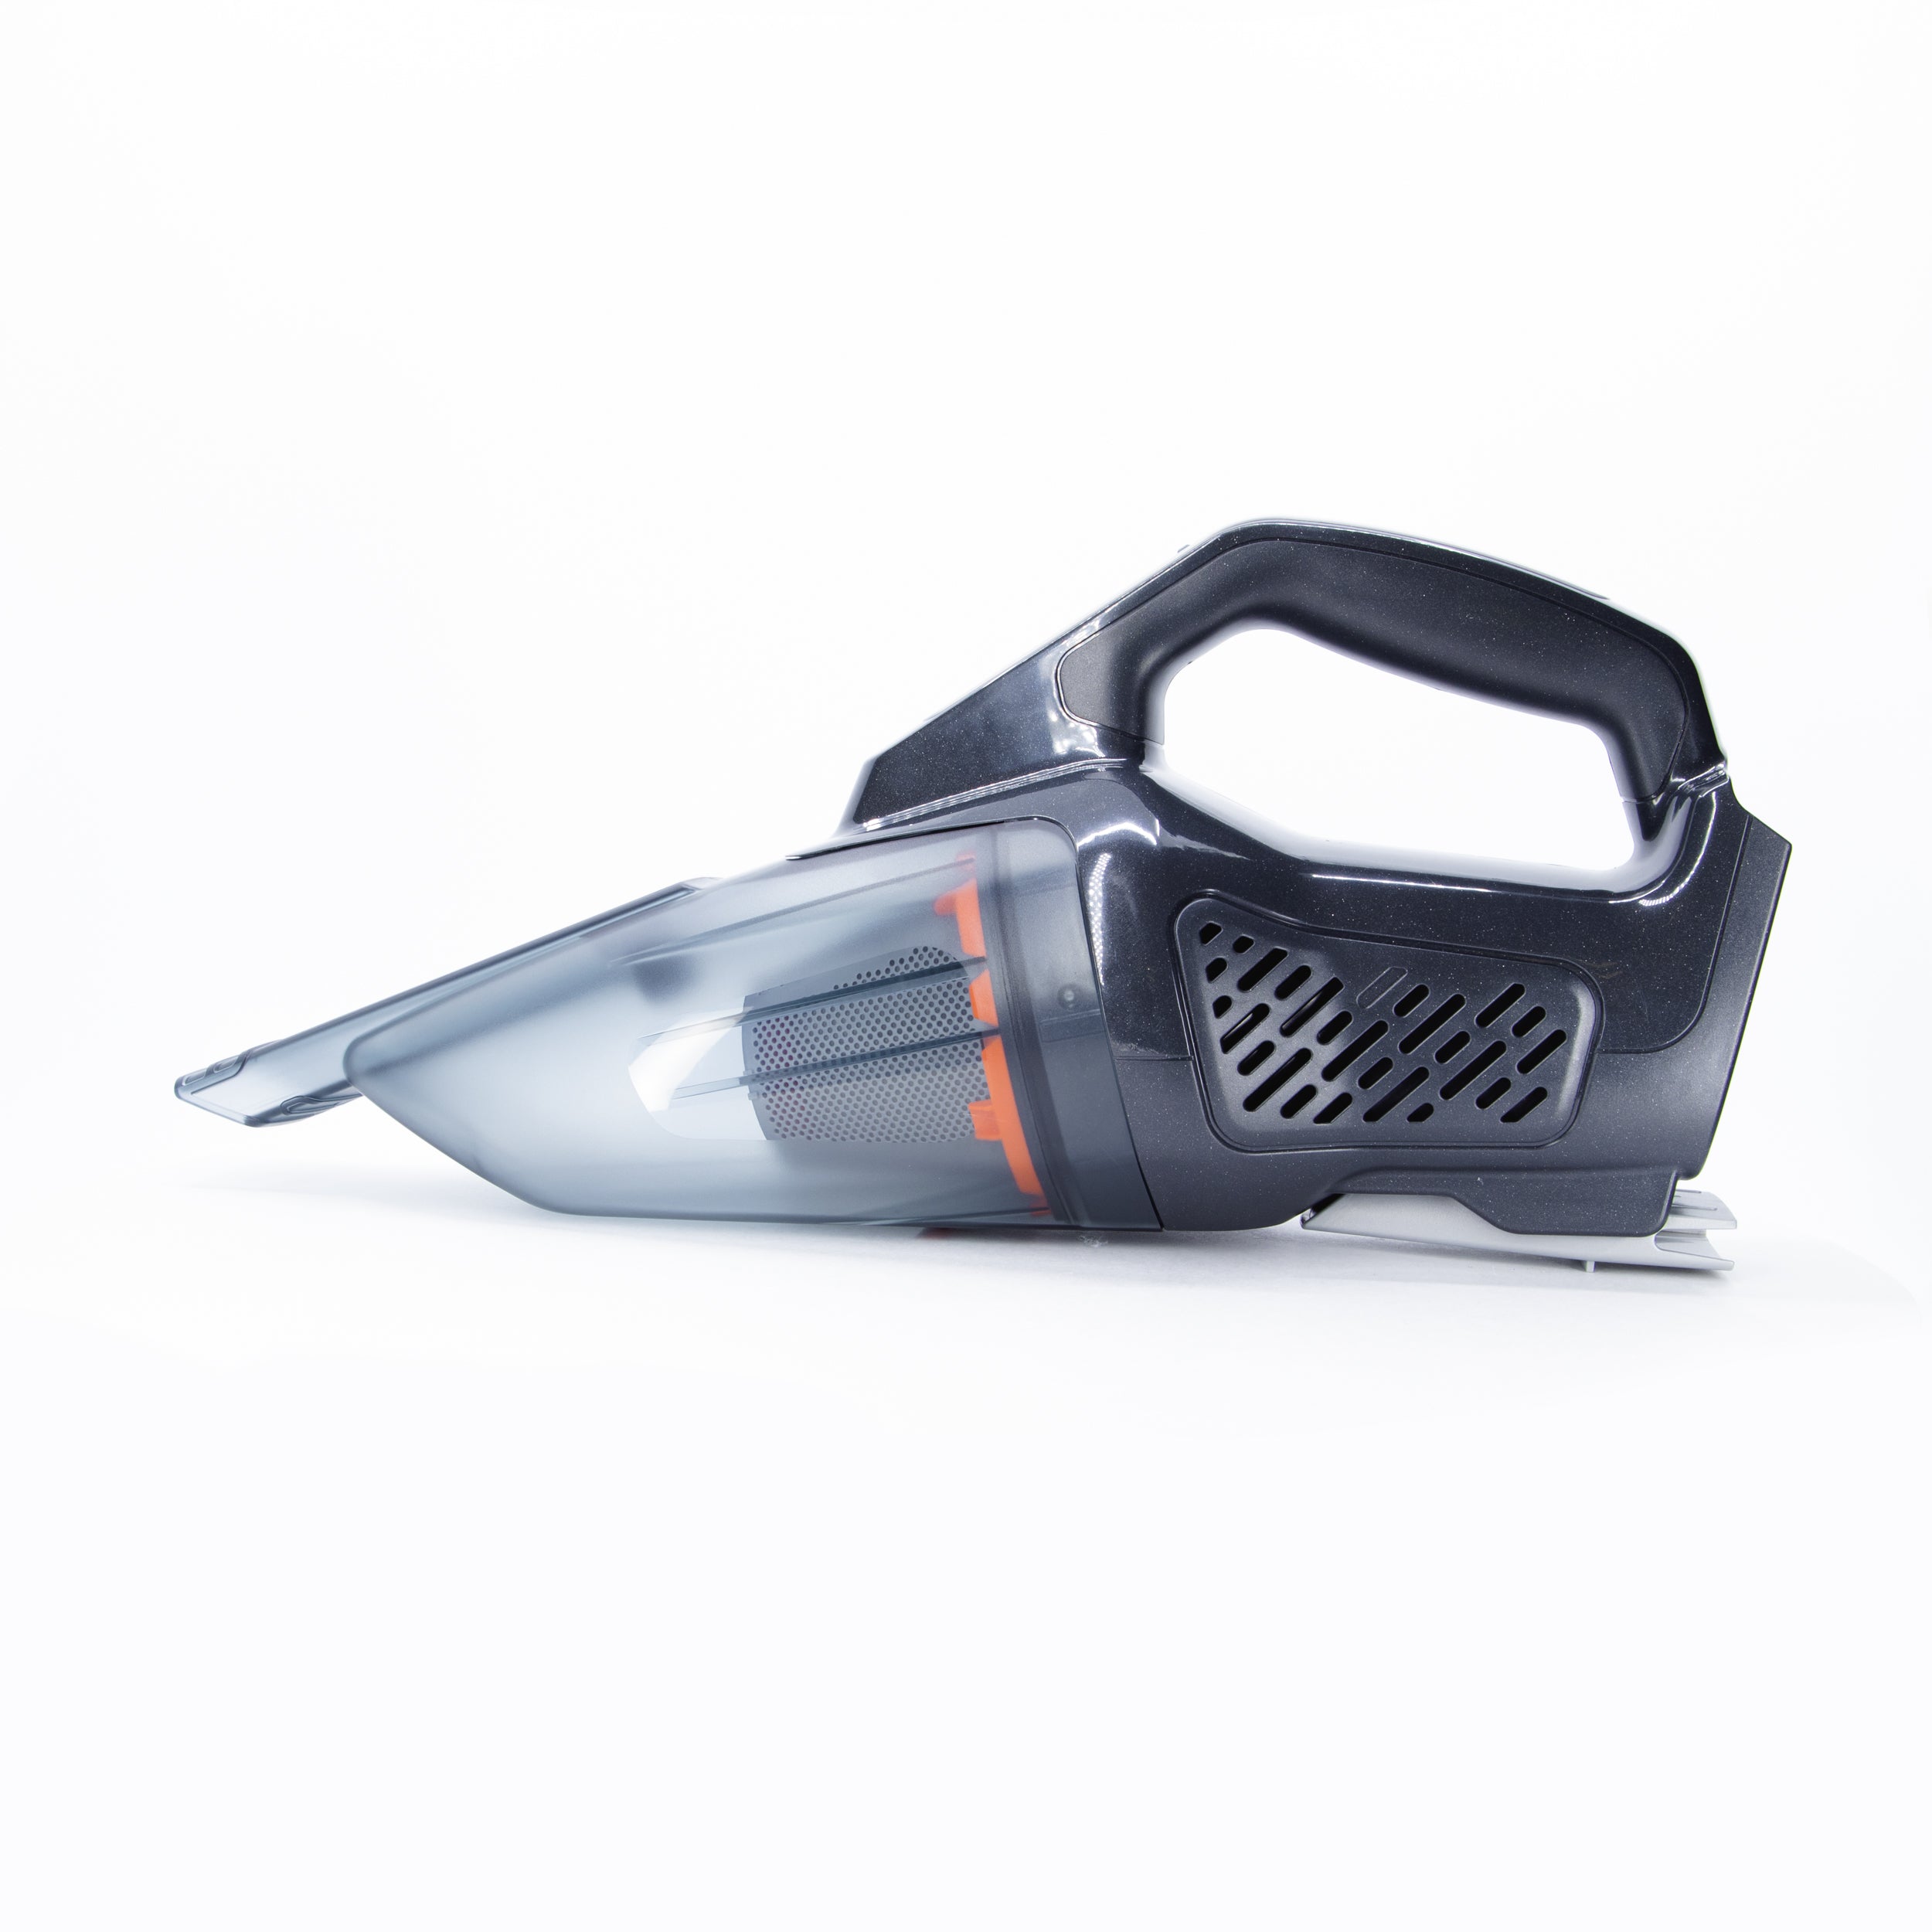 Black Decker 20v Max Vacuum Cleaner - Best Price in Singapore